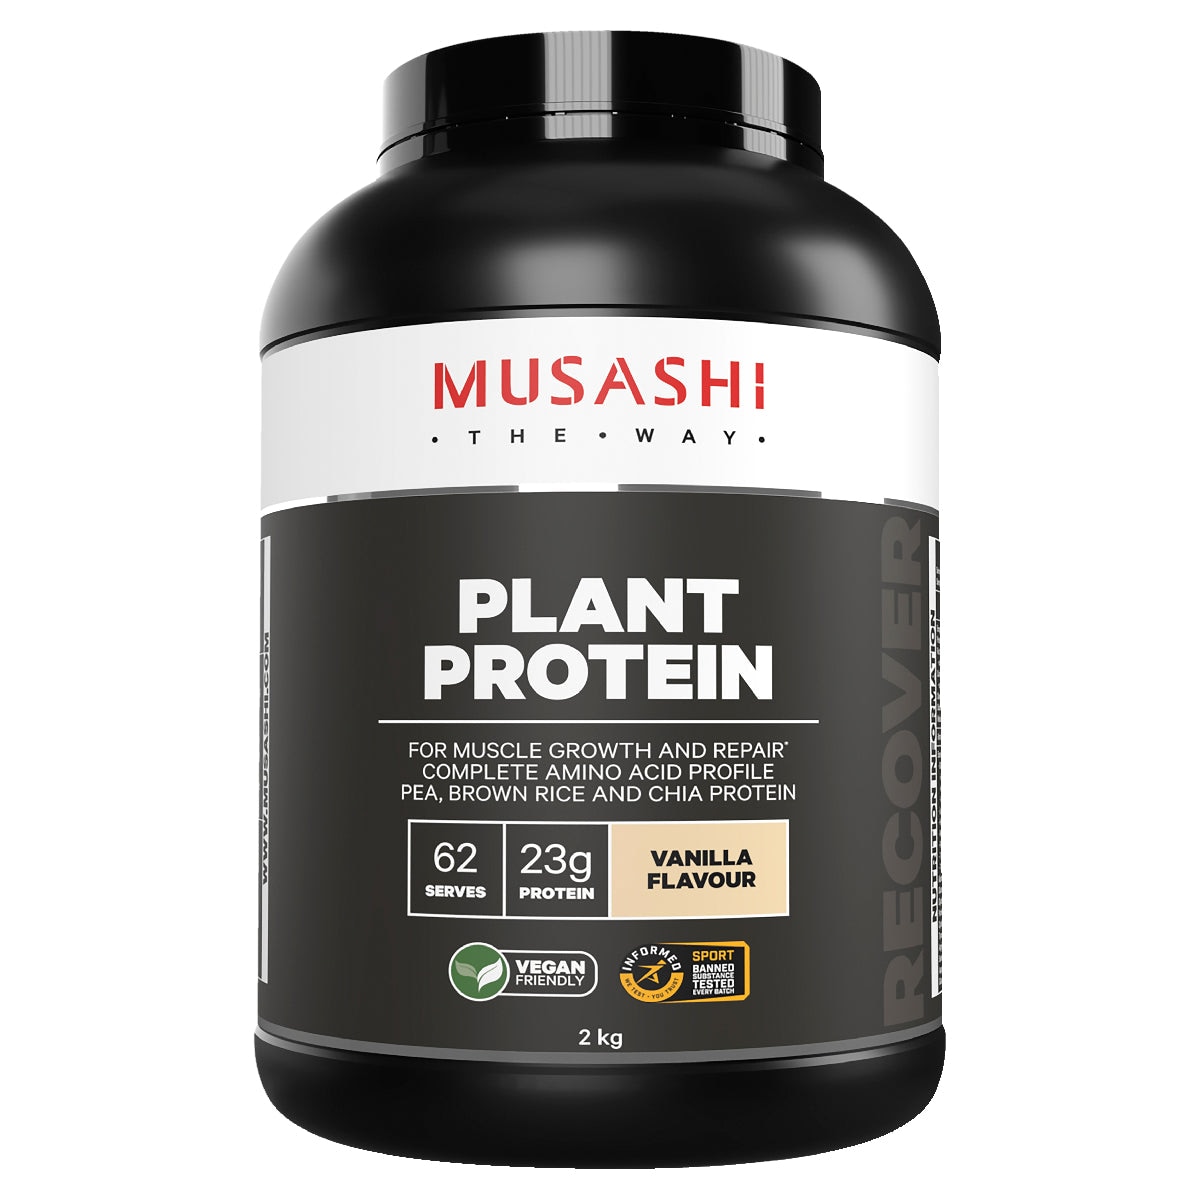 Musashi Plant Protein Powder Vanilla 2kg Australia